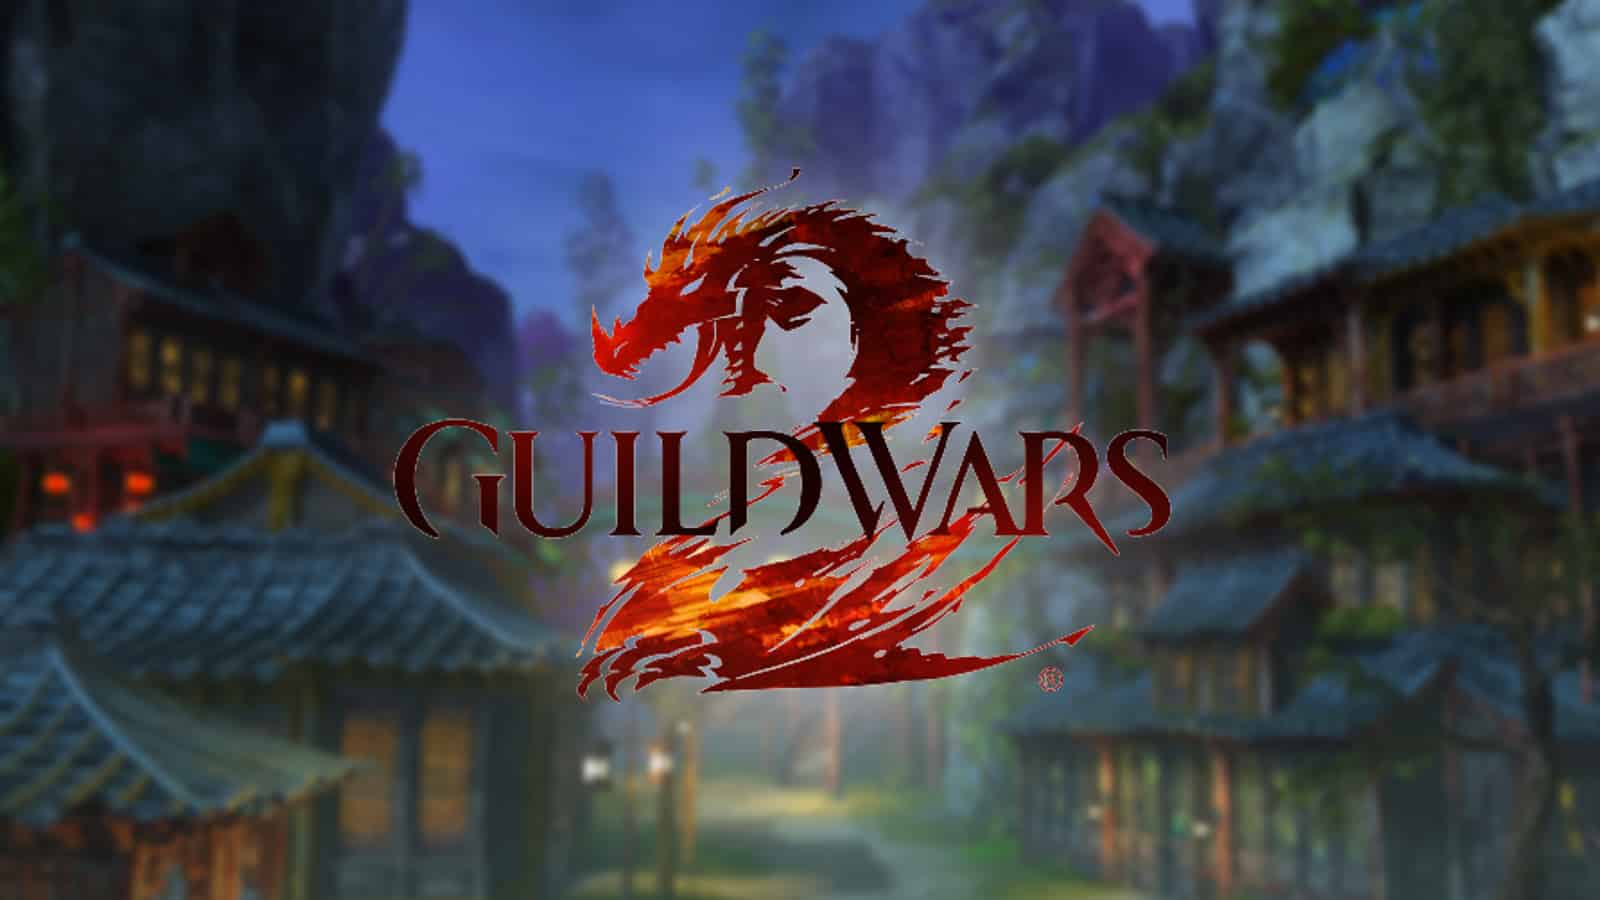 guild wars 2 logo against cantha background